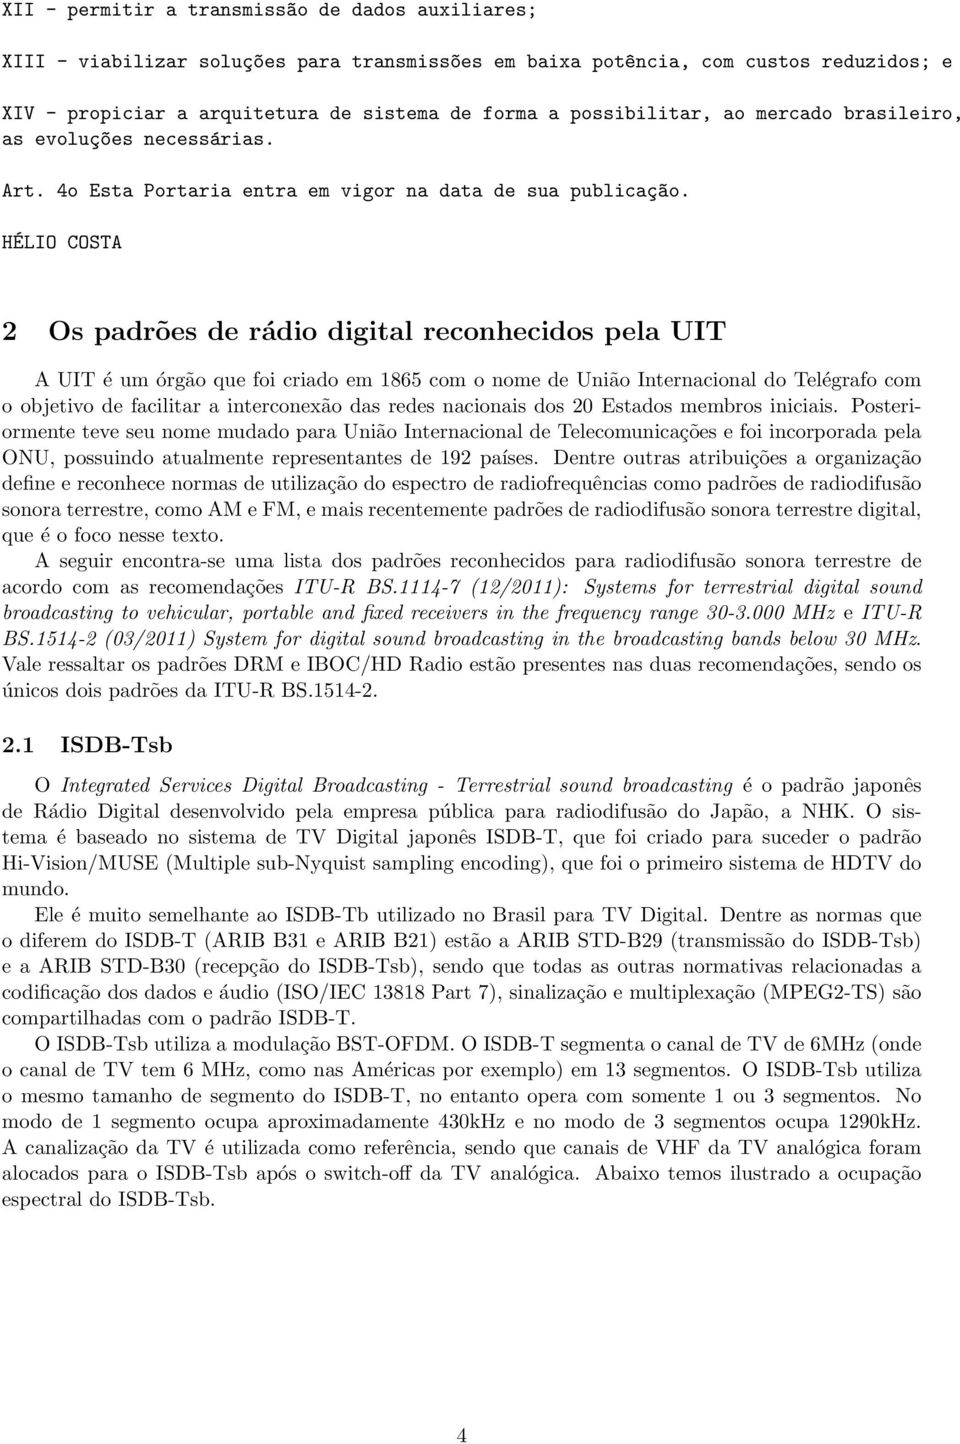 HÉLIO COSTA 2 Os padrões de rádio digital reconhecidos pela UIT A UIT é um órgão que foi criado em 1865 com o nome de União Internacional do Telégrafo com o objetivo de facilitar a interconexão das